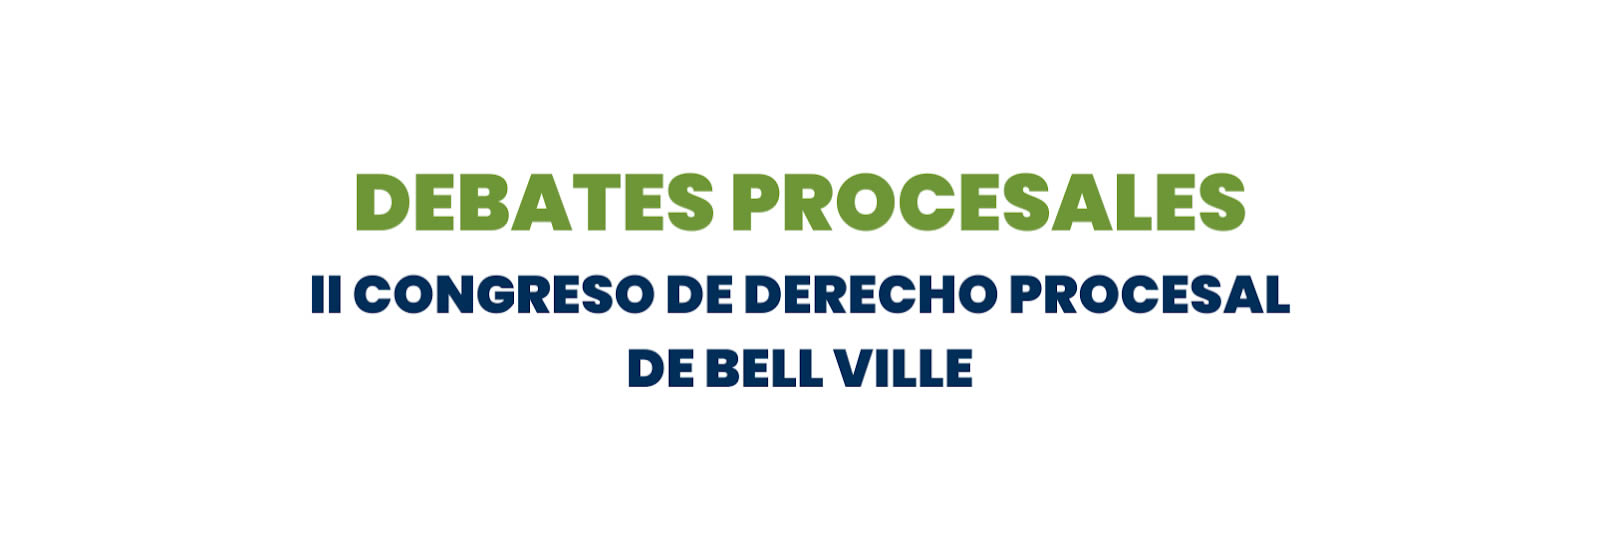 II CONGRESO DE DERECHO PROCESAL DE BELL VILLE - "DEBATES PROCESALES"